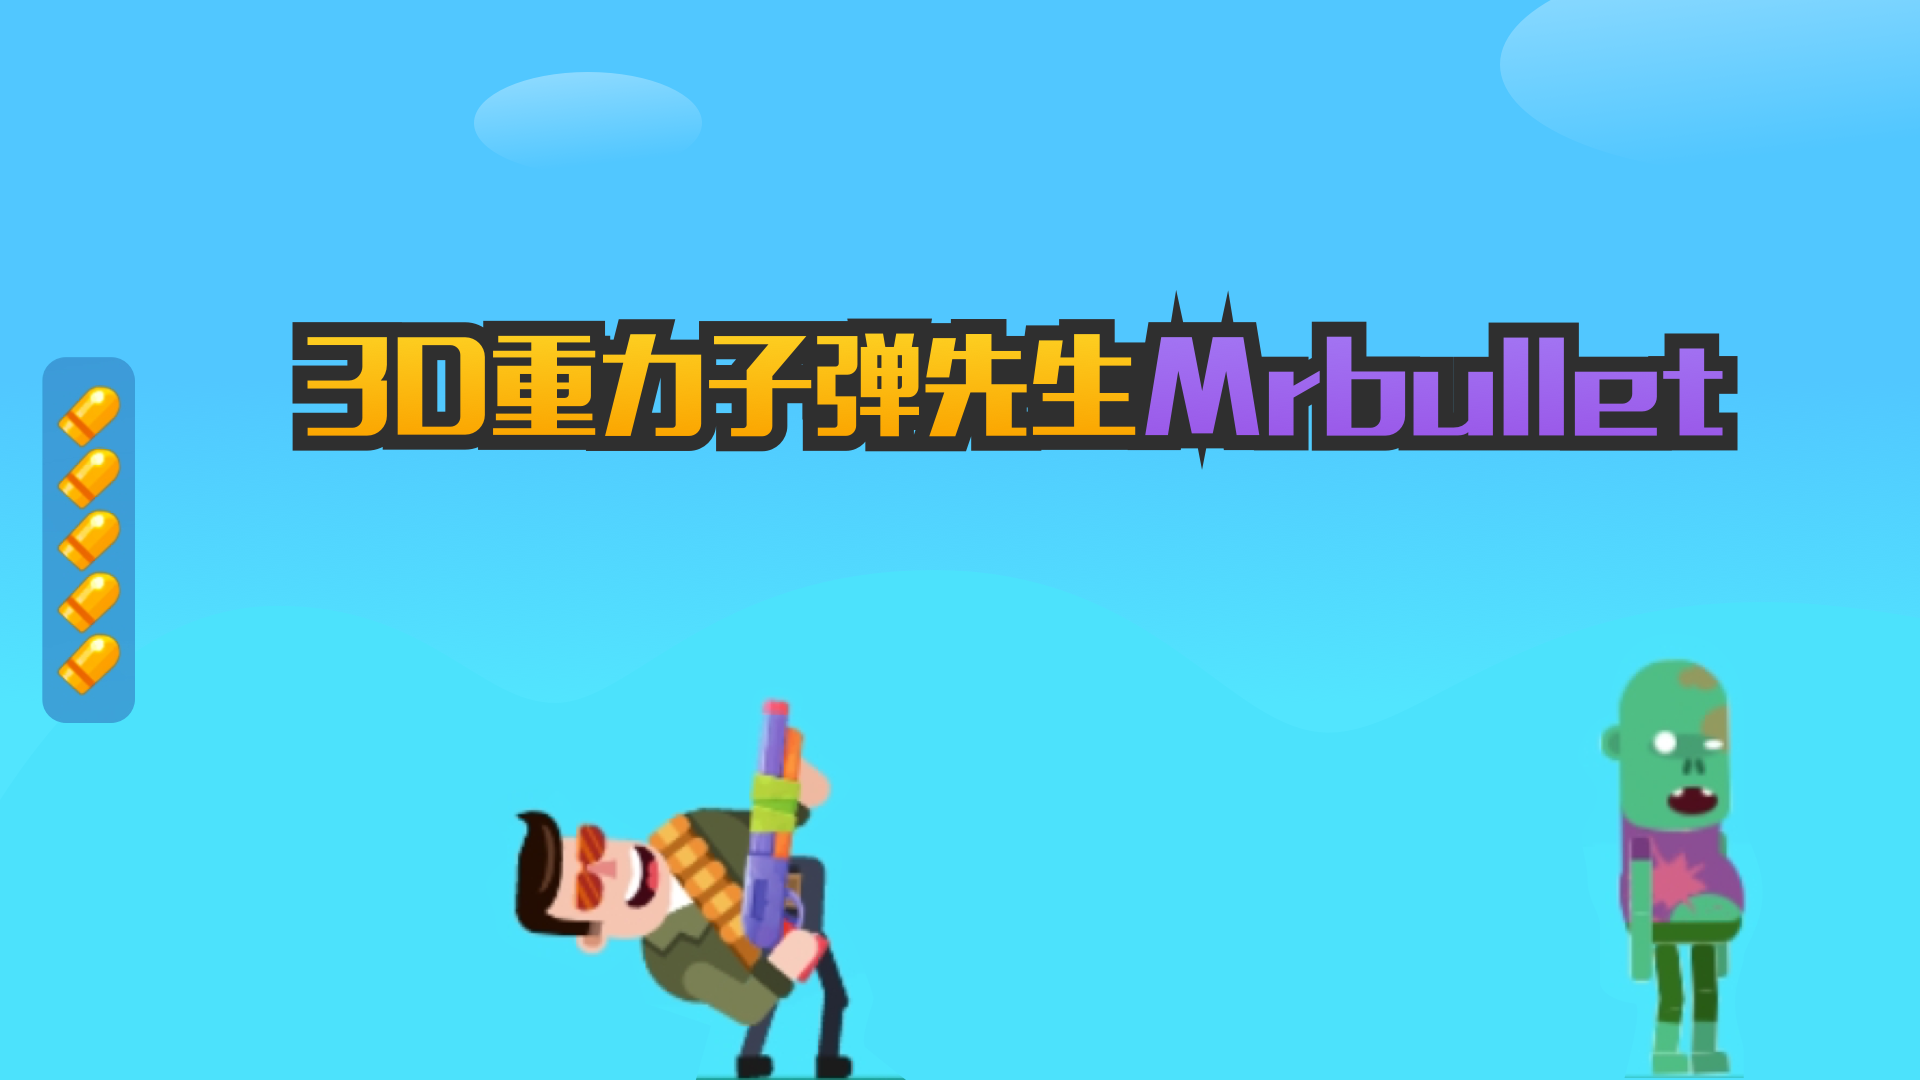 Banner of 3D重力子彈先生Mrbullet 1.0.0